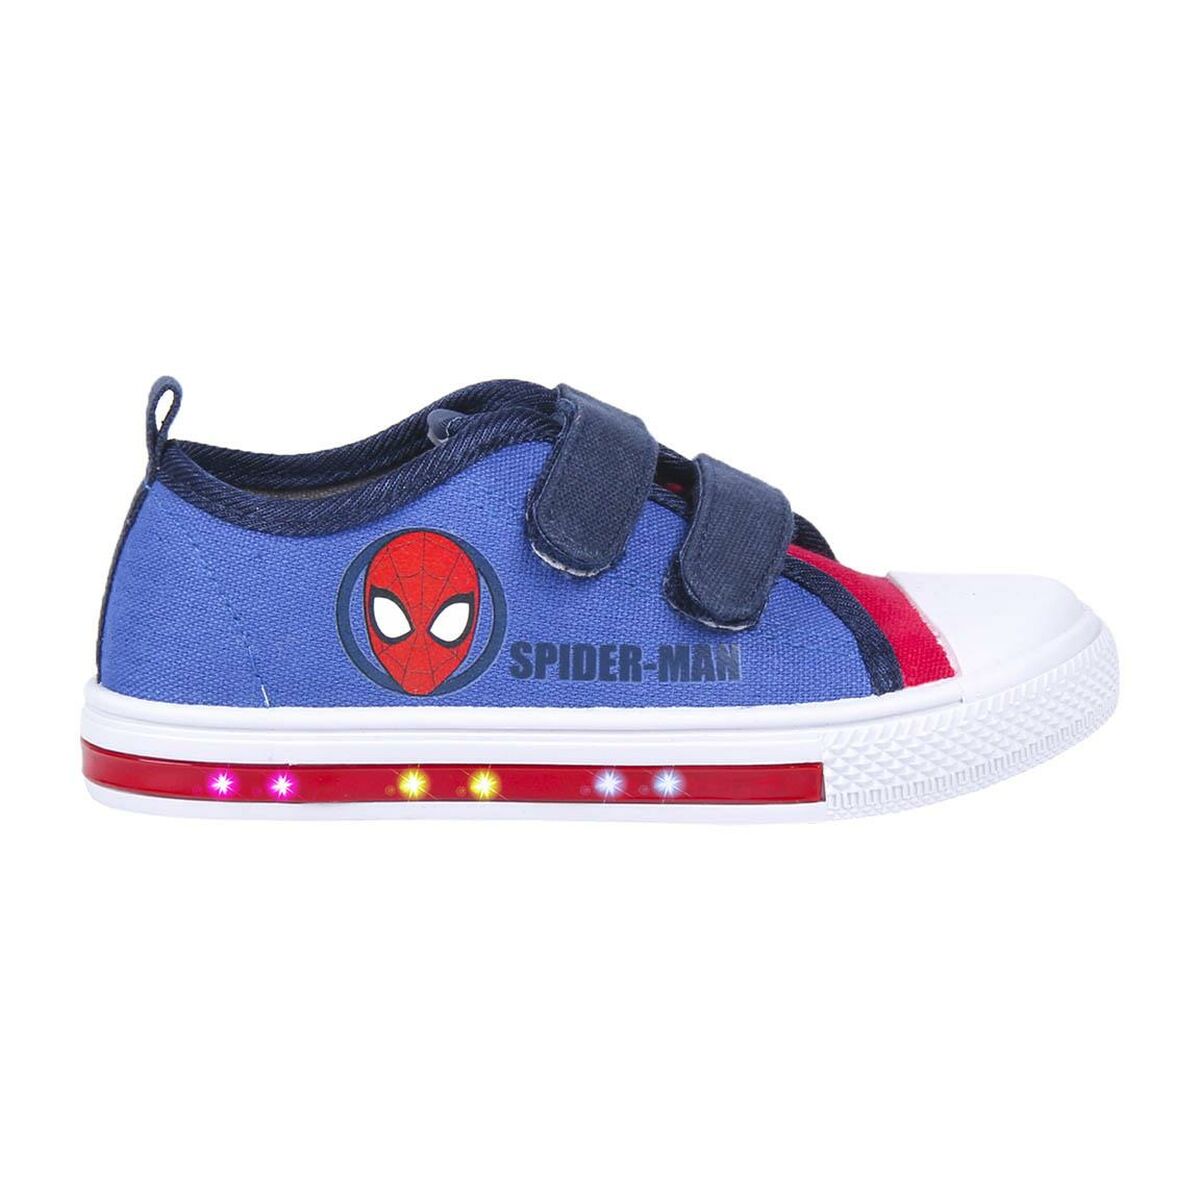 Chaussures casual enfant Spiderman Lumières Bleu